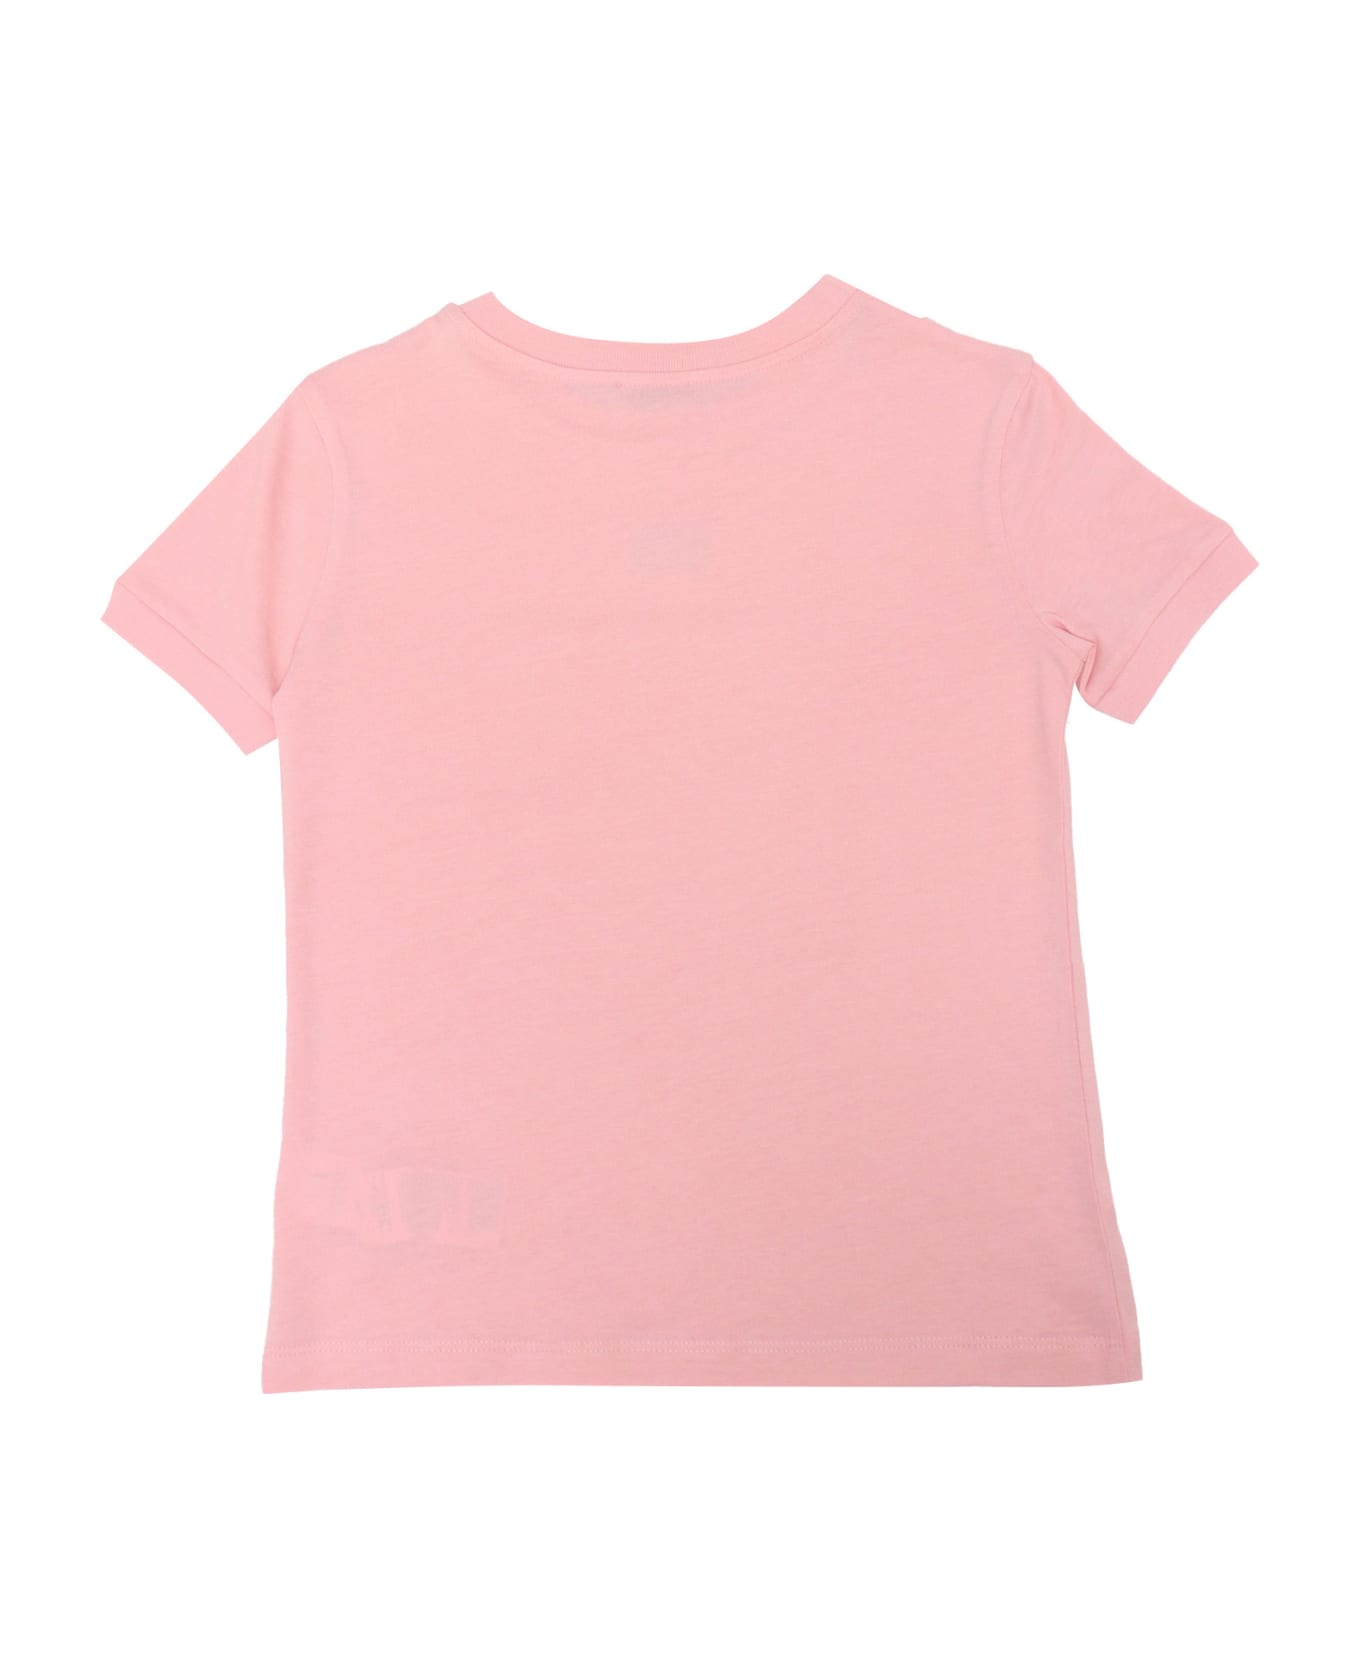 Dolce & Gabbana Pink D&g T-shirt For Girls - PINK